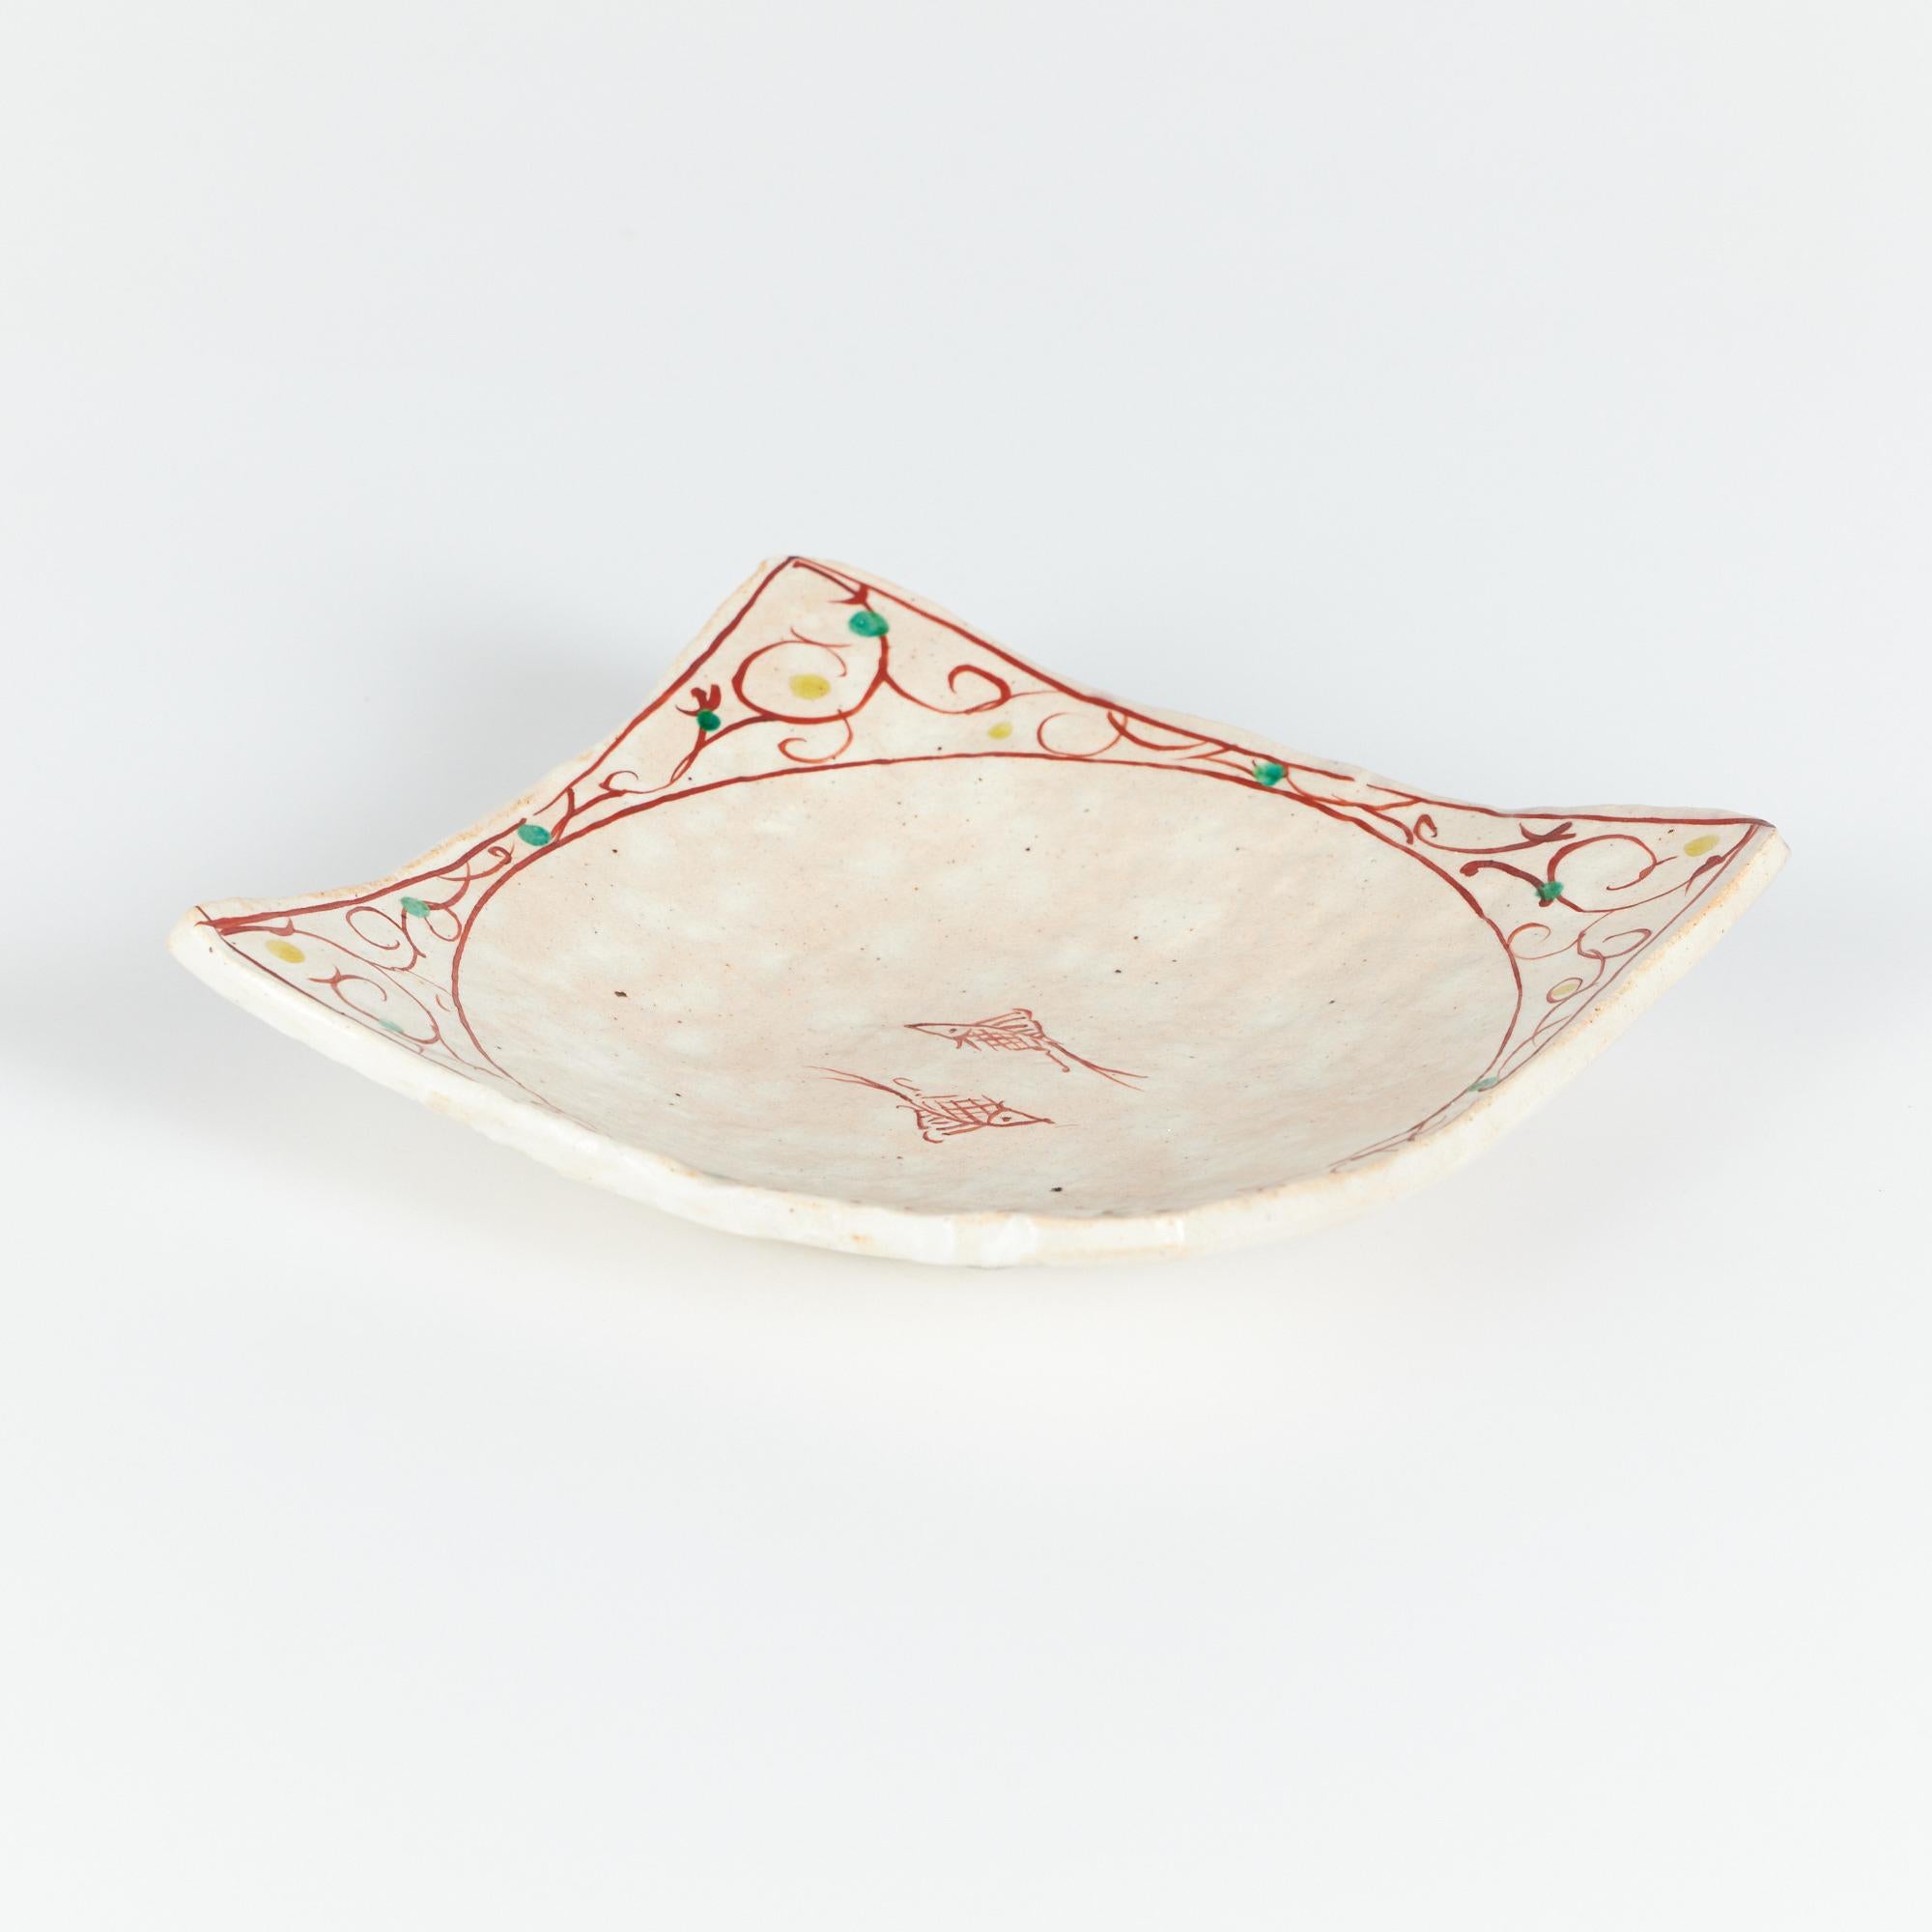 L'assiette en céramique présente une forme carrée avec des coins retournés. L'assiette est émaillée d'une douce couleur crème et beige avec des mouchetures sur toute la surface. L'assiette est ornée de deux poissons rouges peints à la main au centre